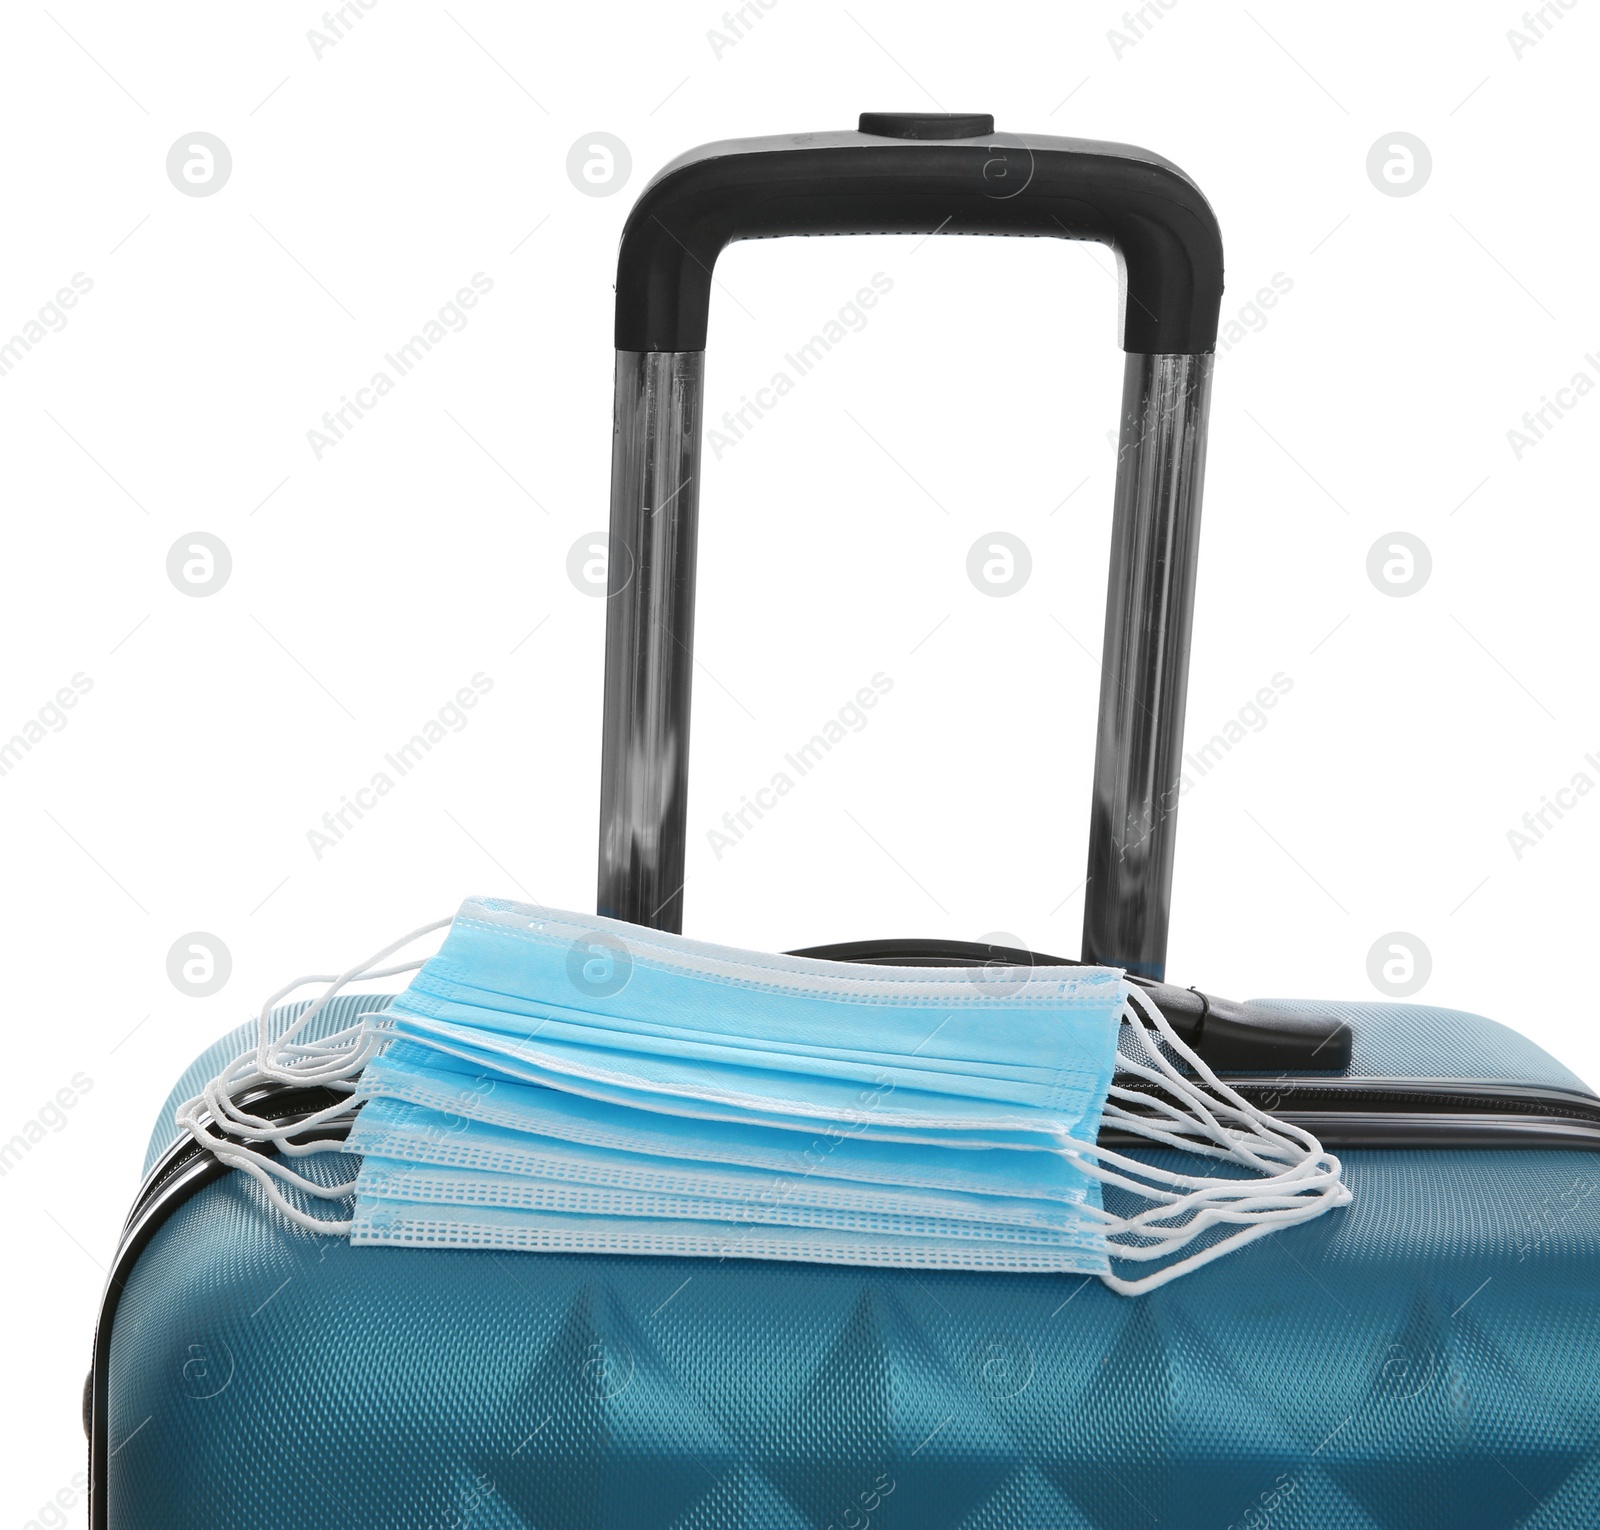 Photo of Stylish blue suitcase and protective masks on white background. Travelling during coronavirus pandemic